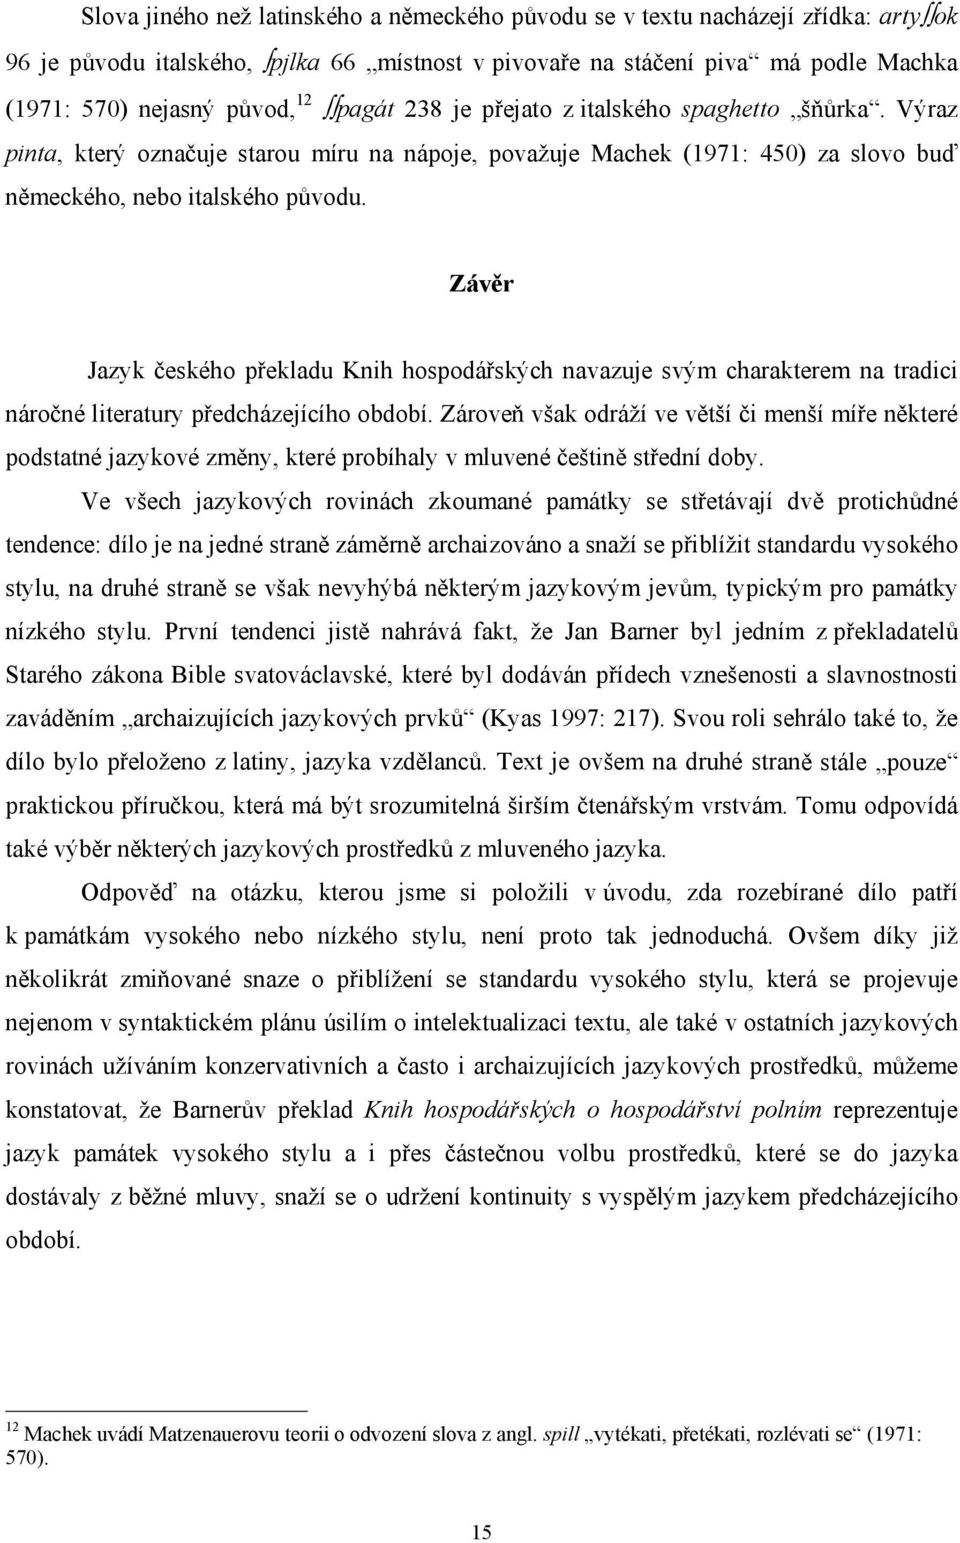 Závěr Jazyk českého překladu Knih hospodářských navazuje svým charakterem na tradici náročné literatury předcházejícího období.